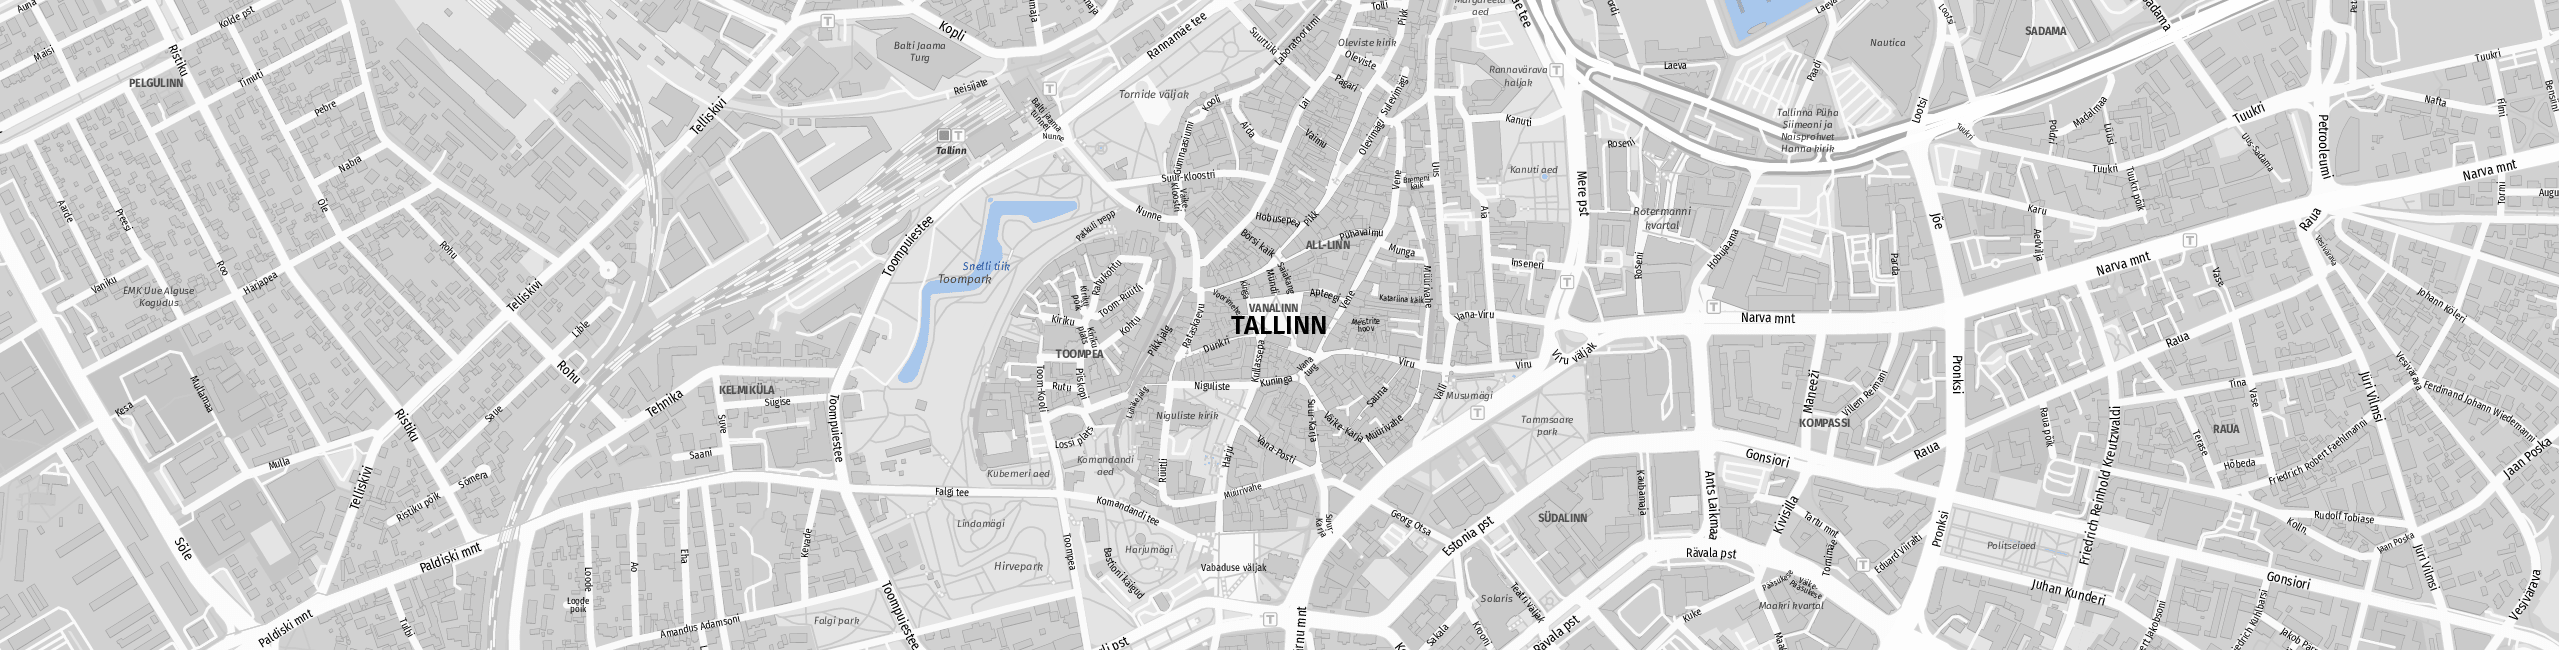 Stadtplan Tallinn zum Downloaden.